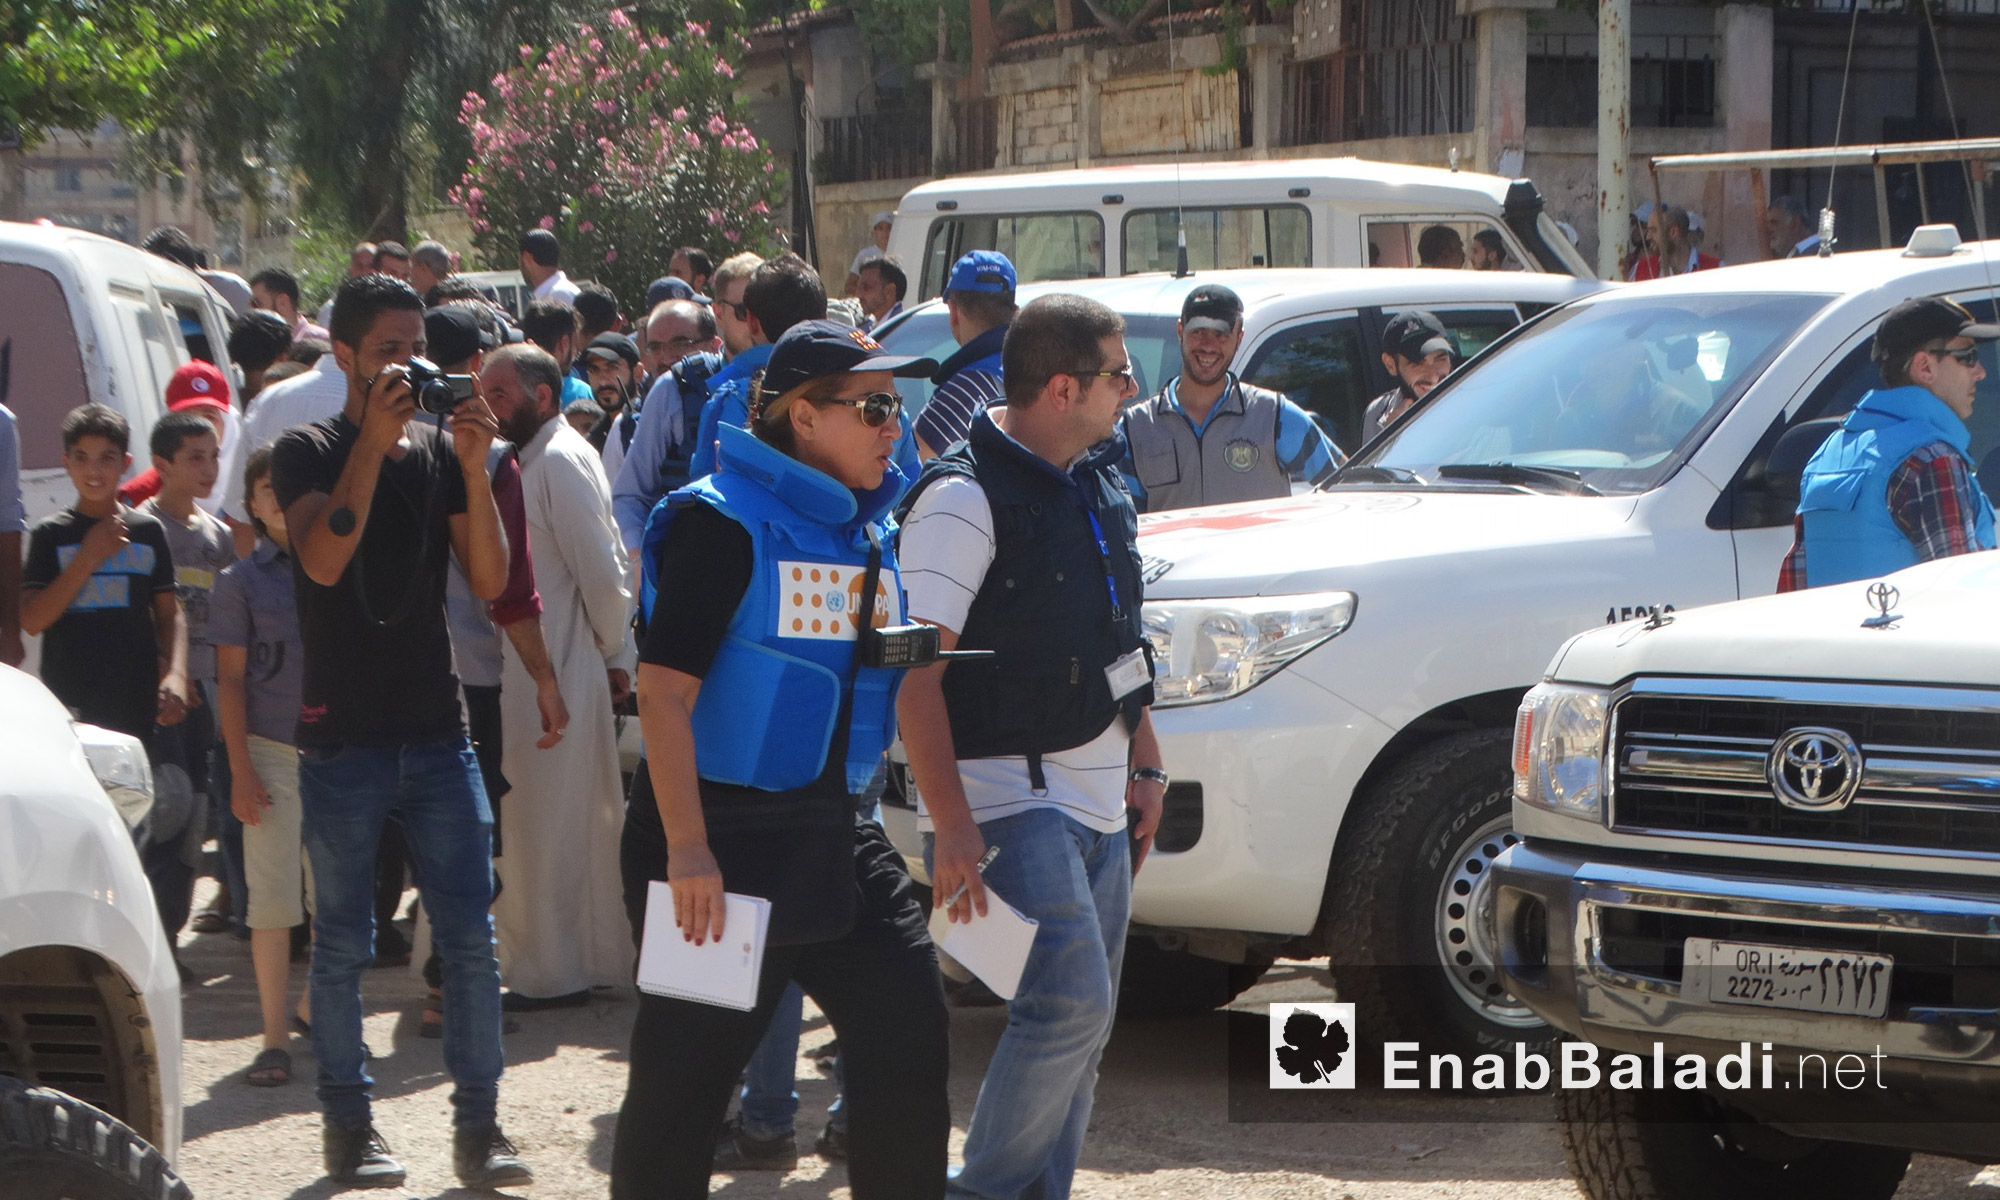  الوفد المرافق لقافلة  المساعدات داخل حي الوعر في حمص - الخميس 14 تموز (عنب بلدي)